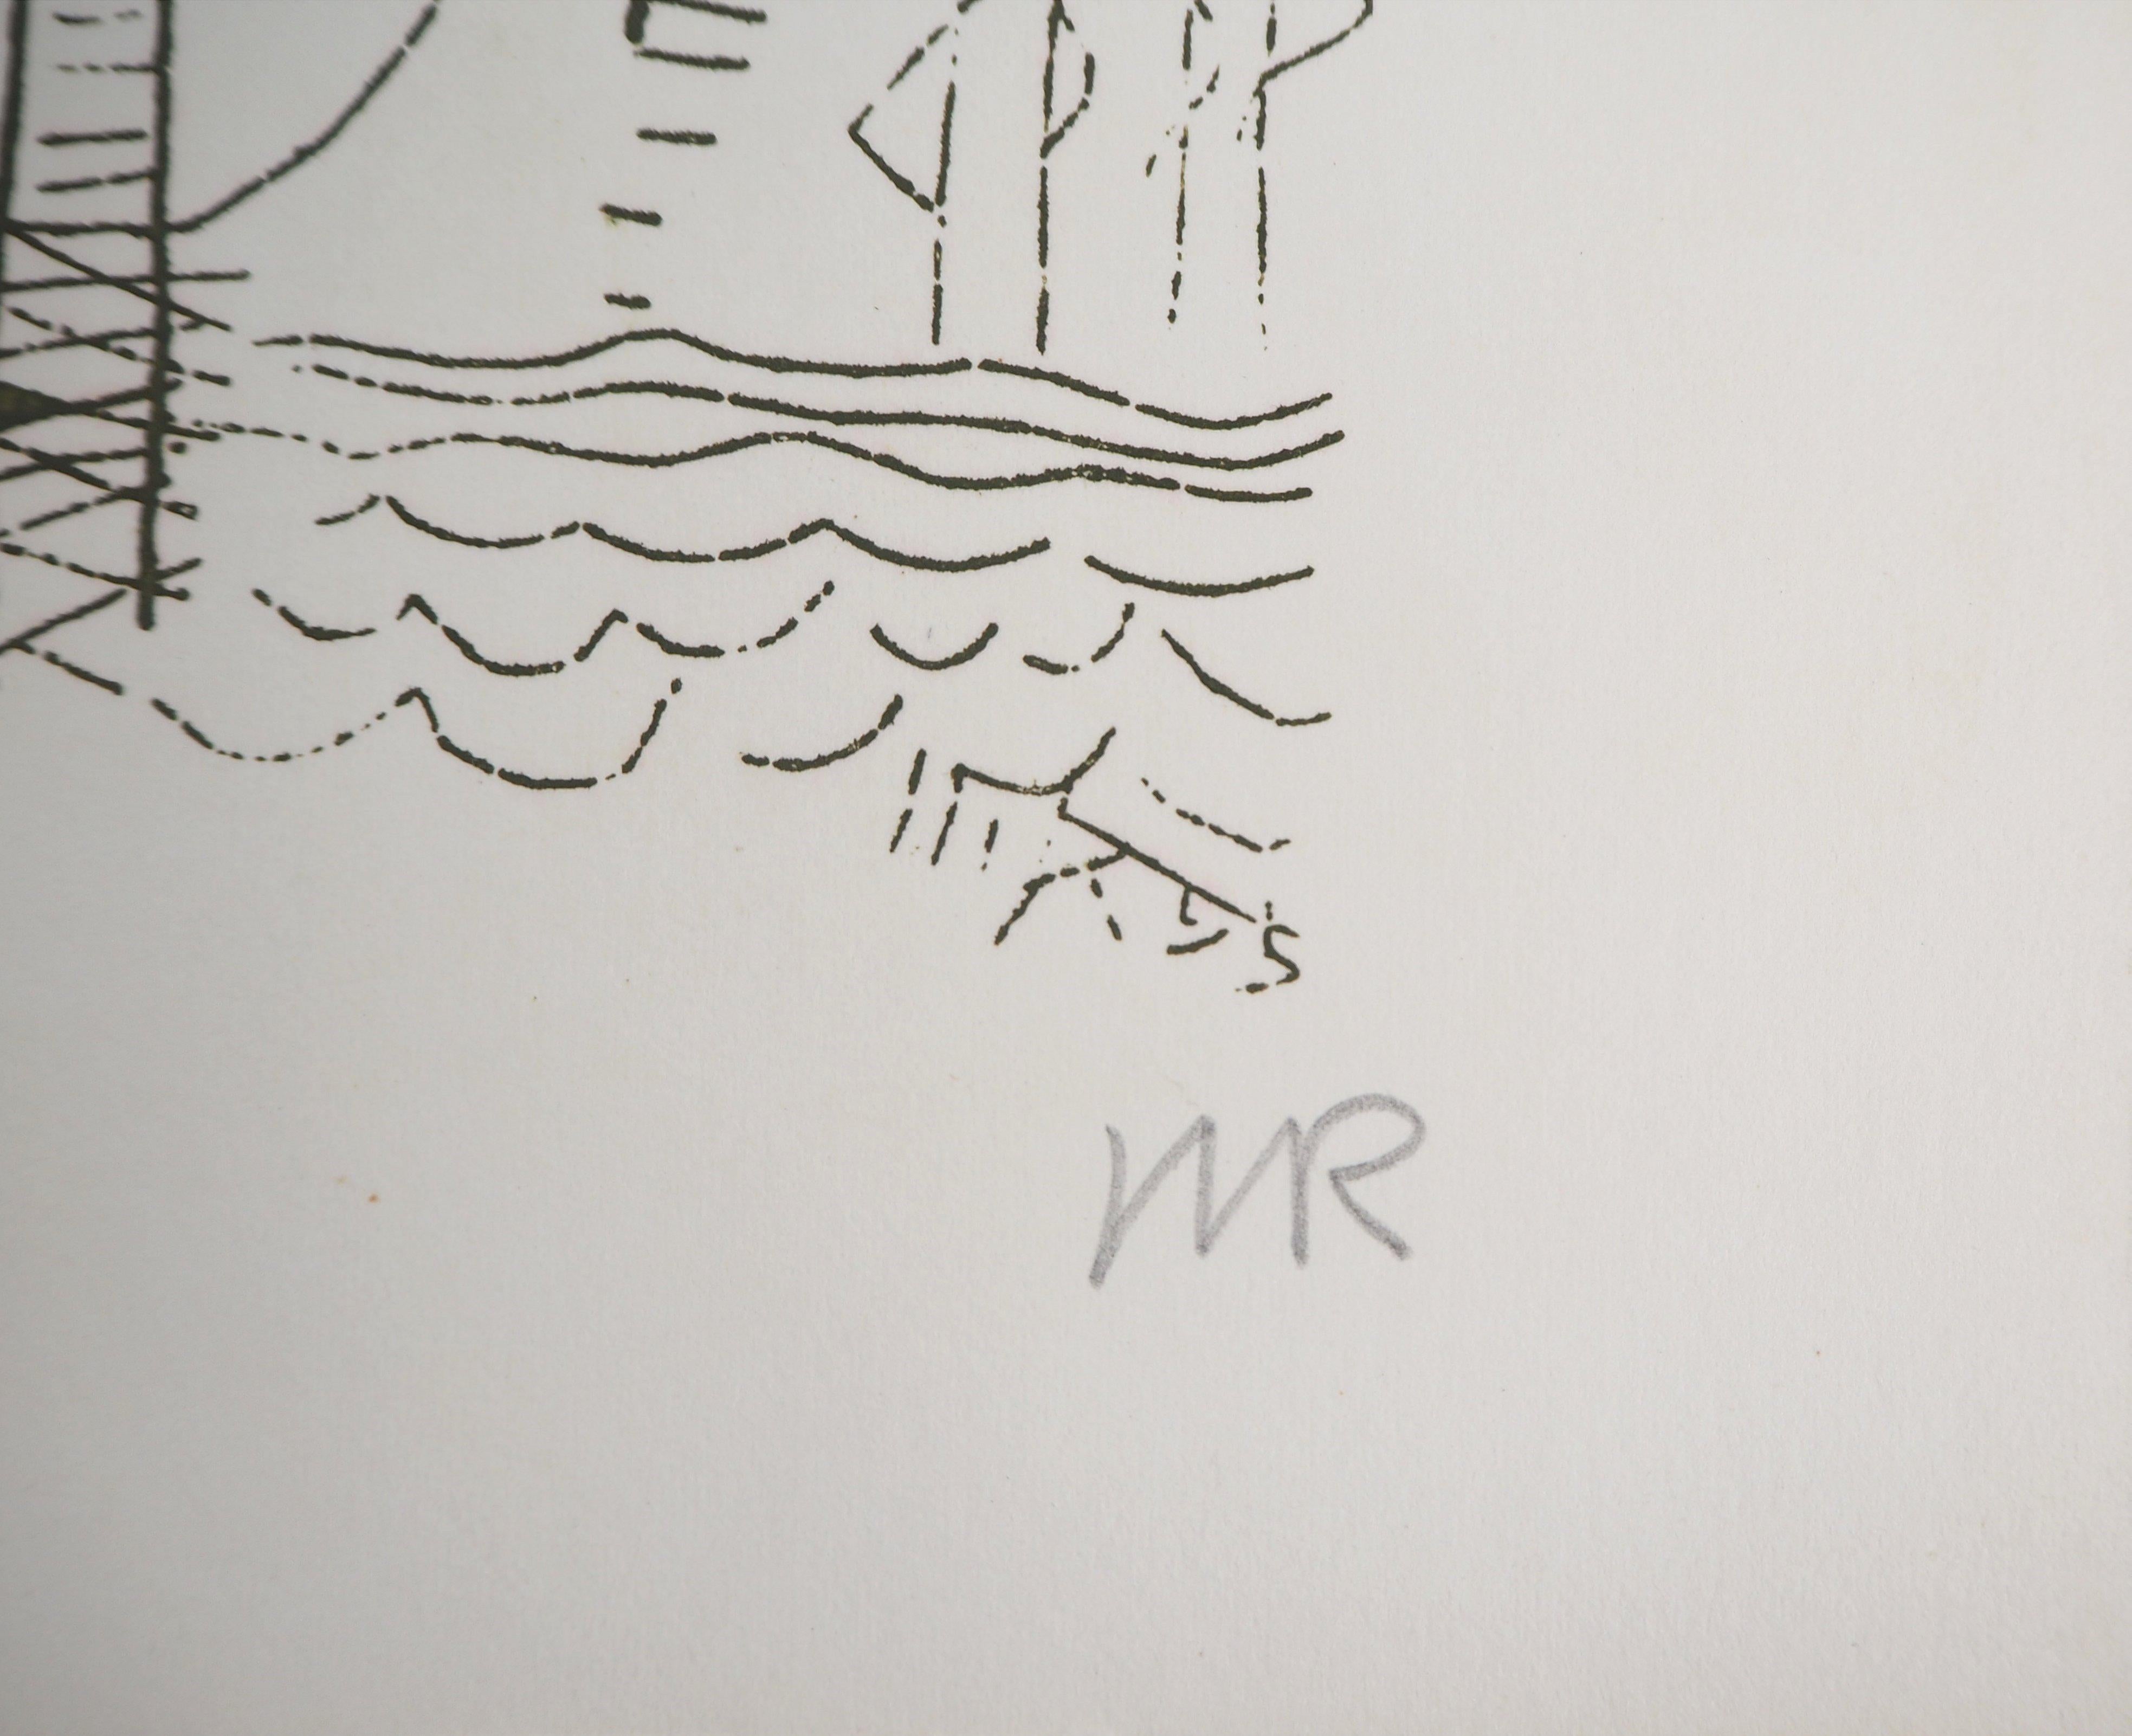 Fleurs surréalistes, Hlne, 1969 - Gravure originale signée à la main - Print de Man Ray